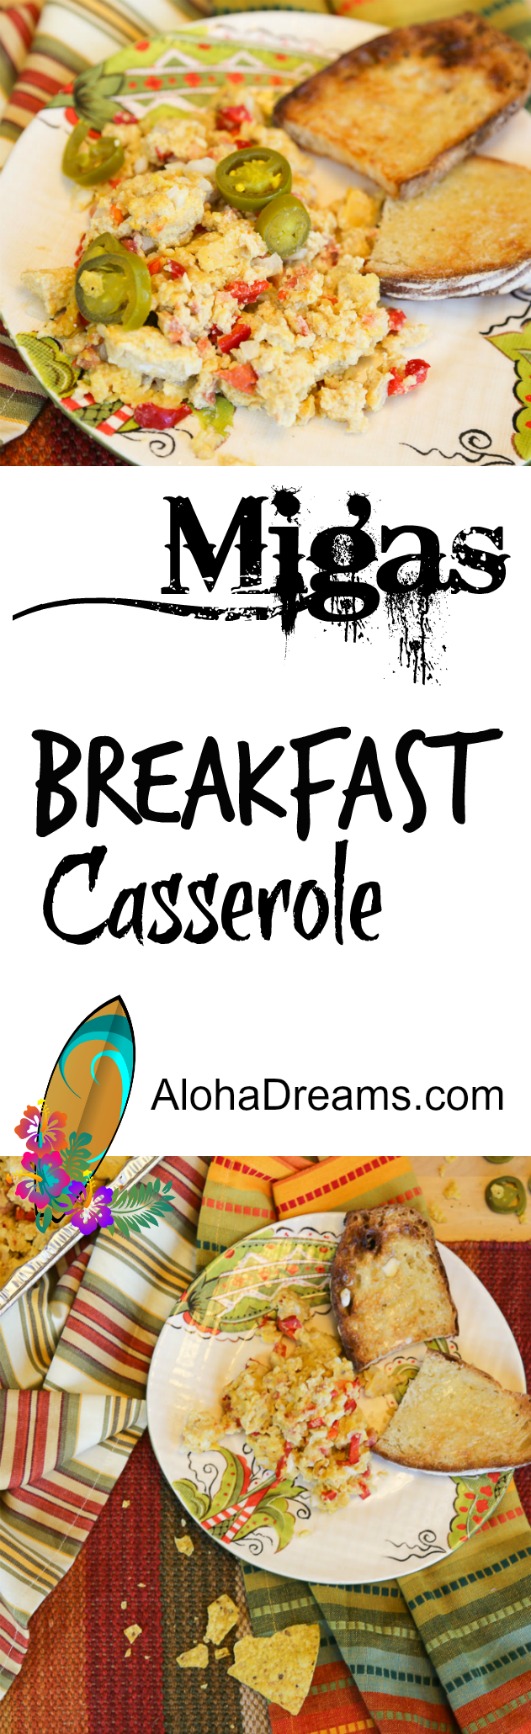 Megs Breakfast Casserole